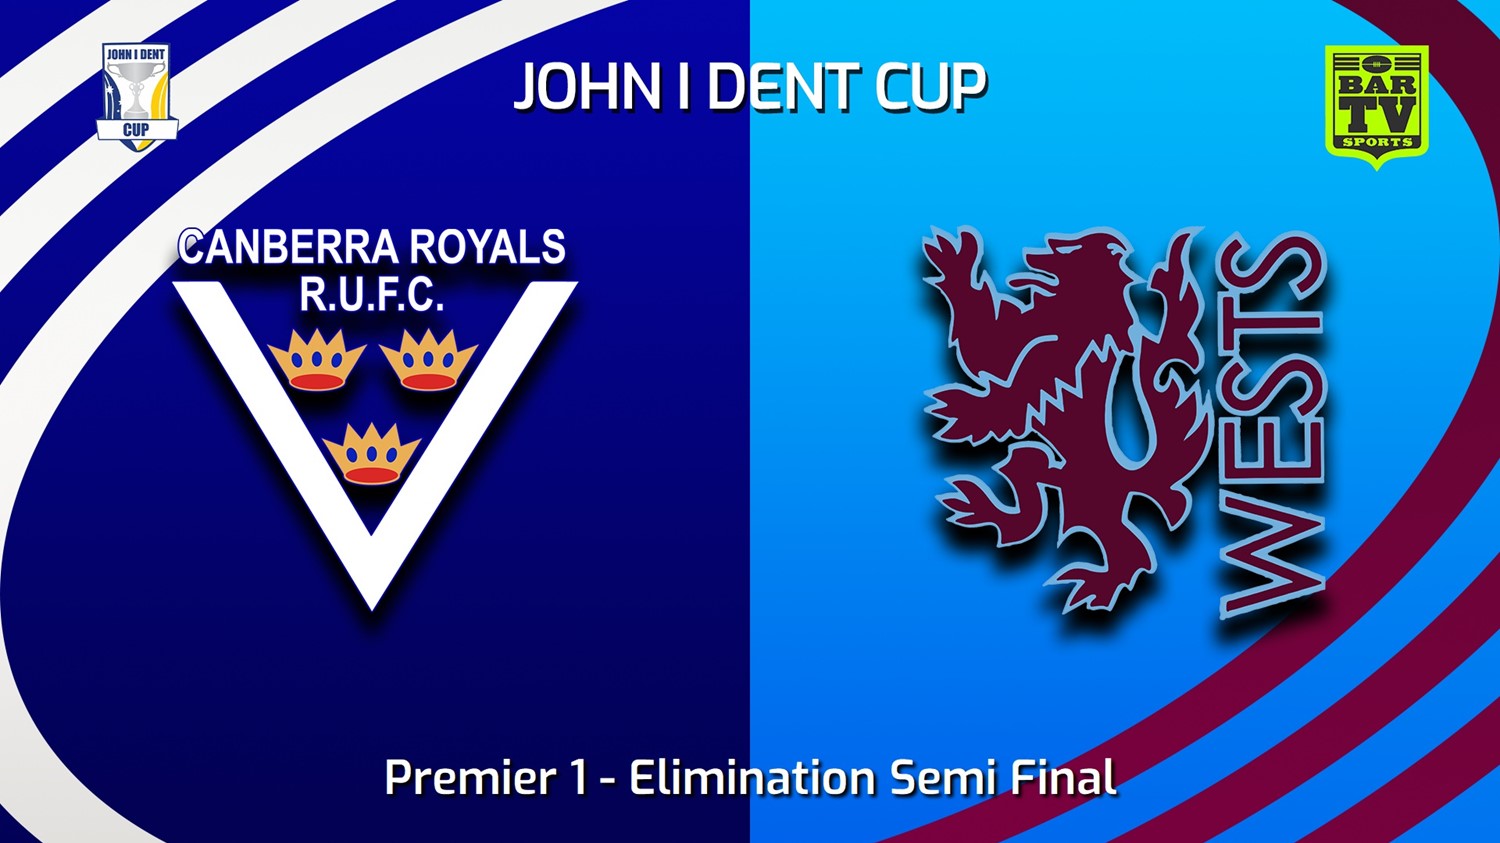 230813-John I Dent (ACT) Elimination Semi Final - Premier 1 - Canberra Royals v Wests Lions Minigame Slate Image